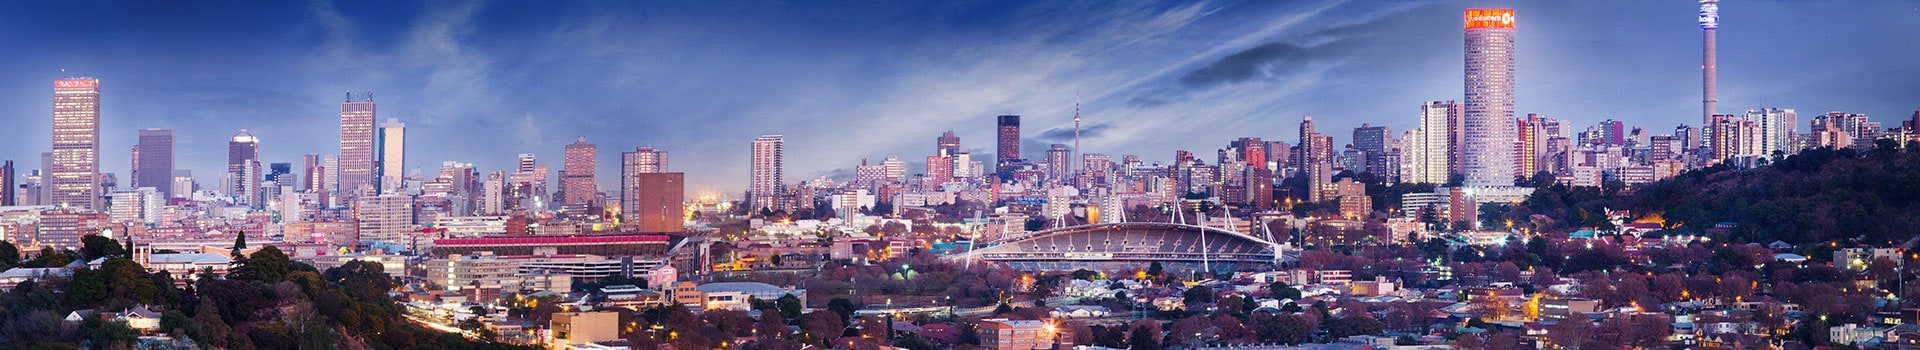 Lissabon - Johannesburg